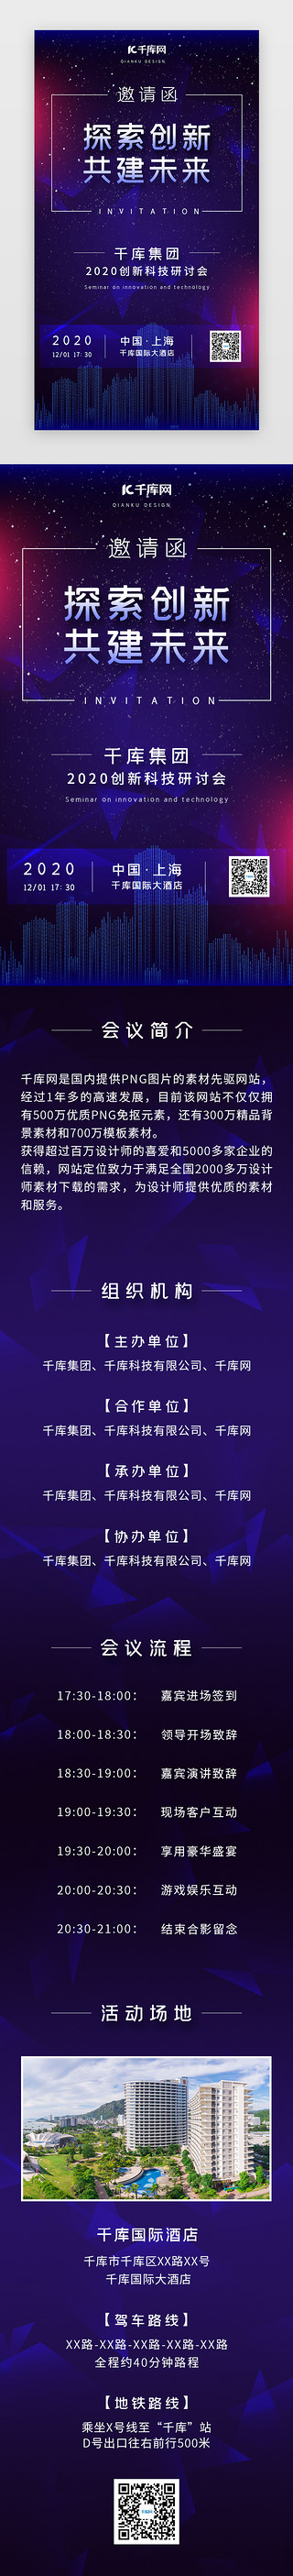 广告公司名片UI设计素材_深蓝紫渐变公司企业会议邀请函H5